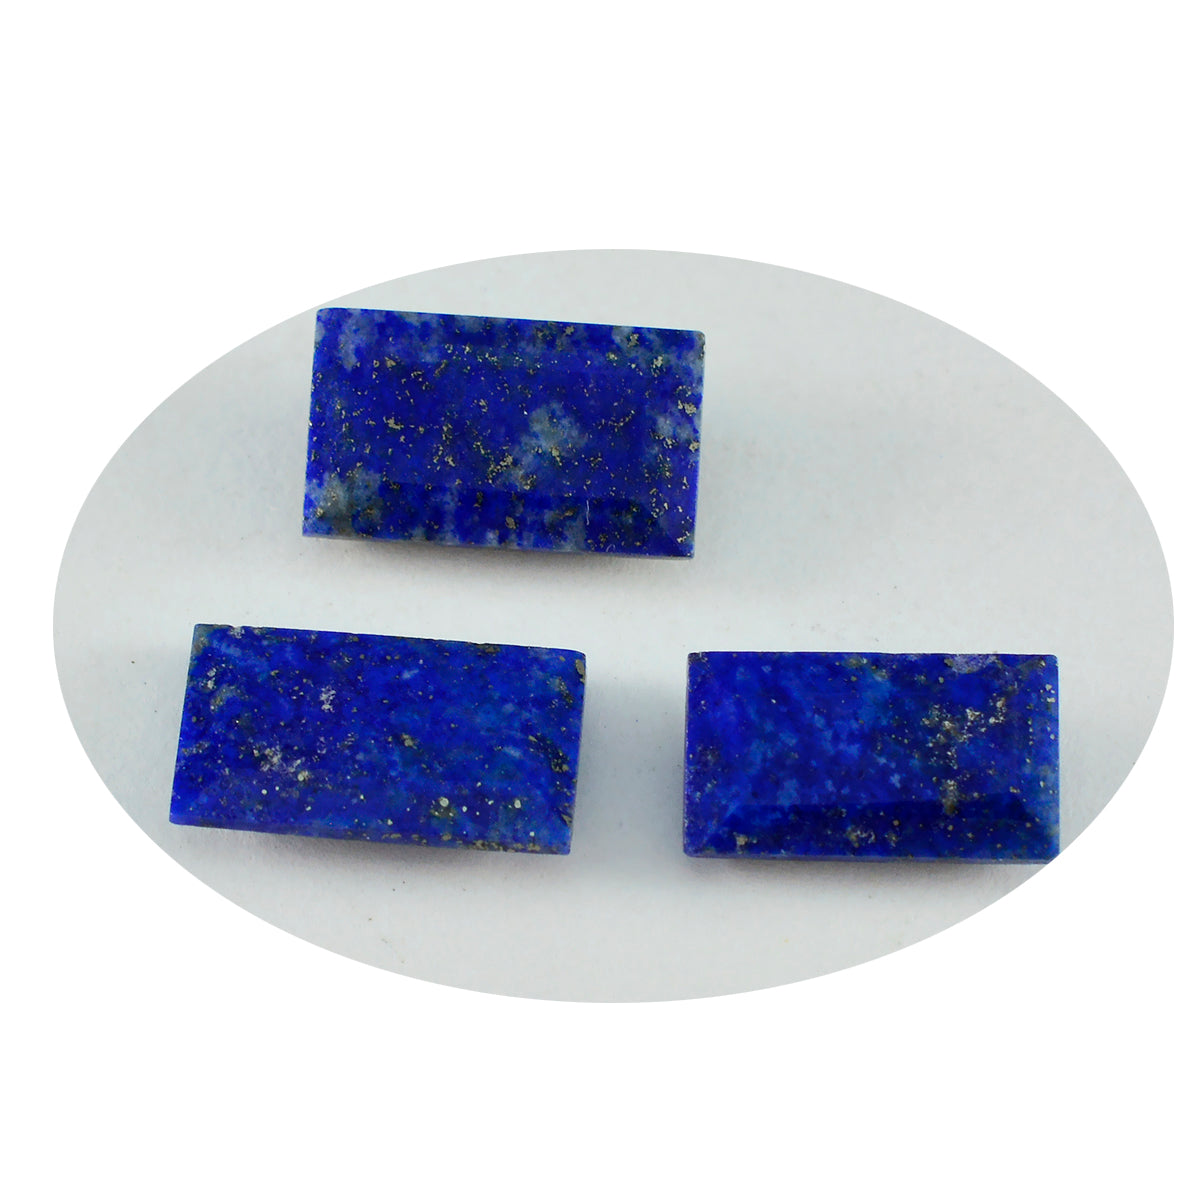 riyogems 1 шт. натуральный синий лазурит ограненный 8x16 мм драгоценный камень в форме багета сладкий качественный драгоценный камень